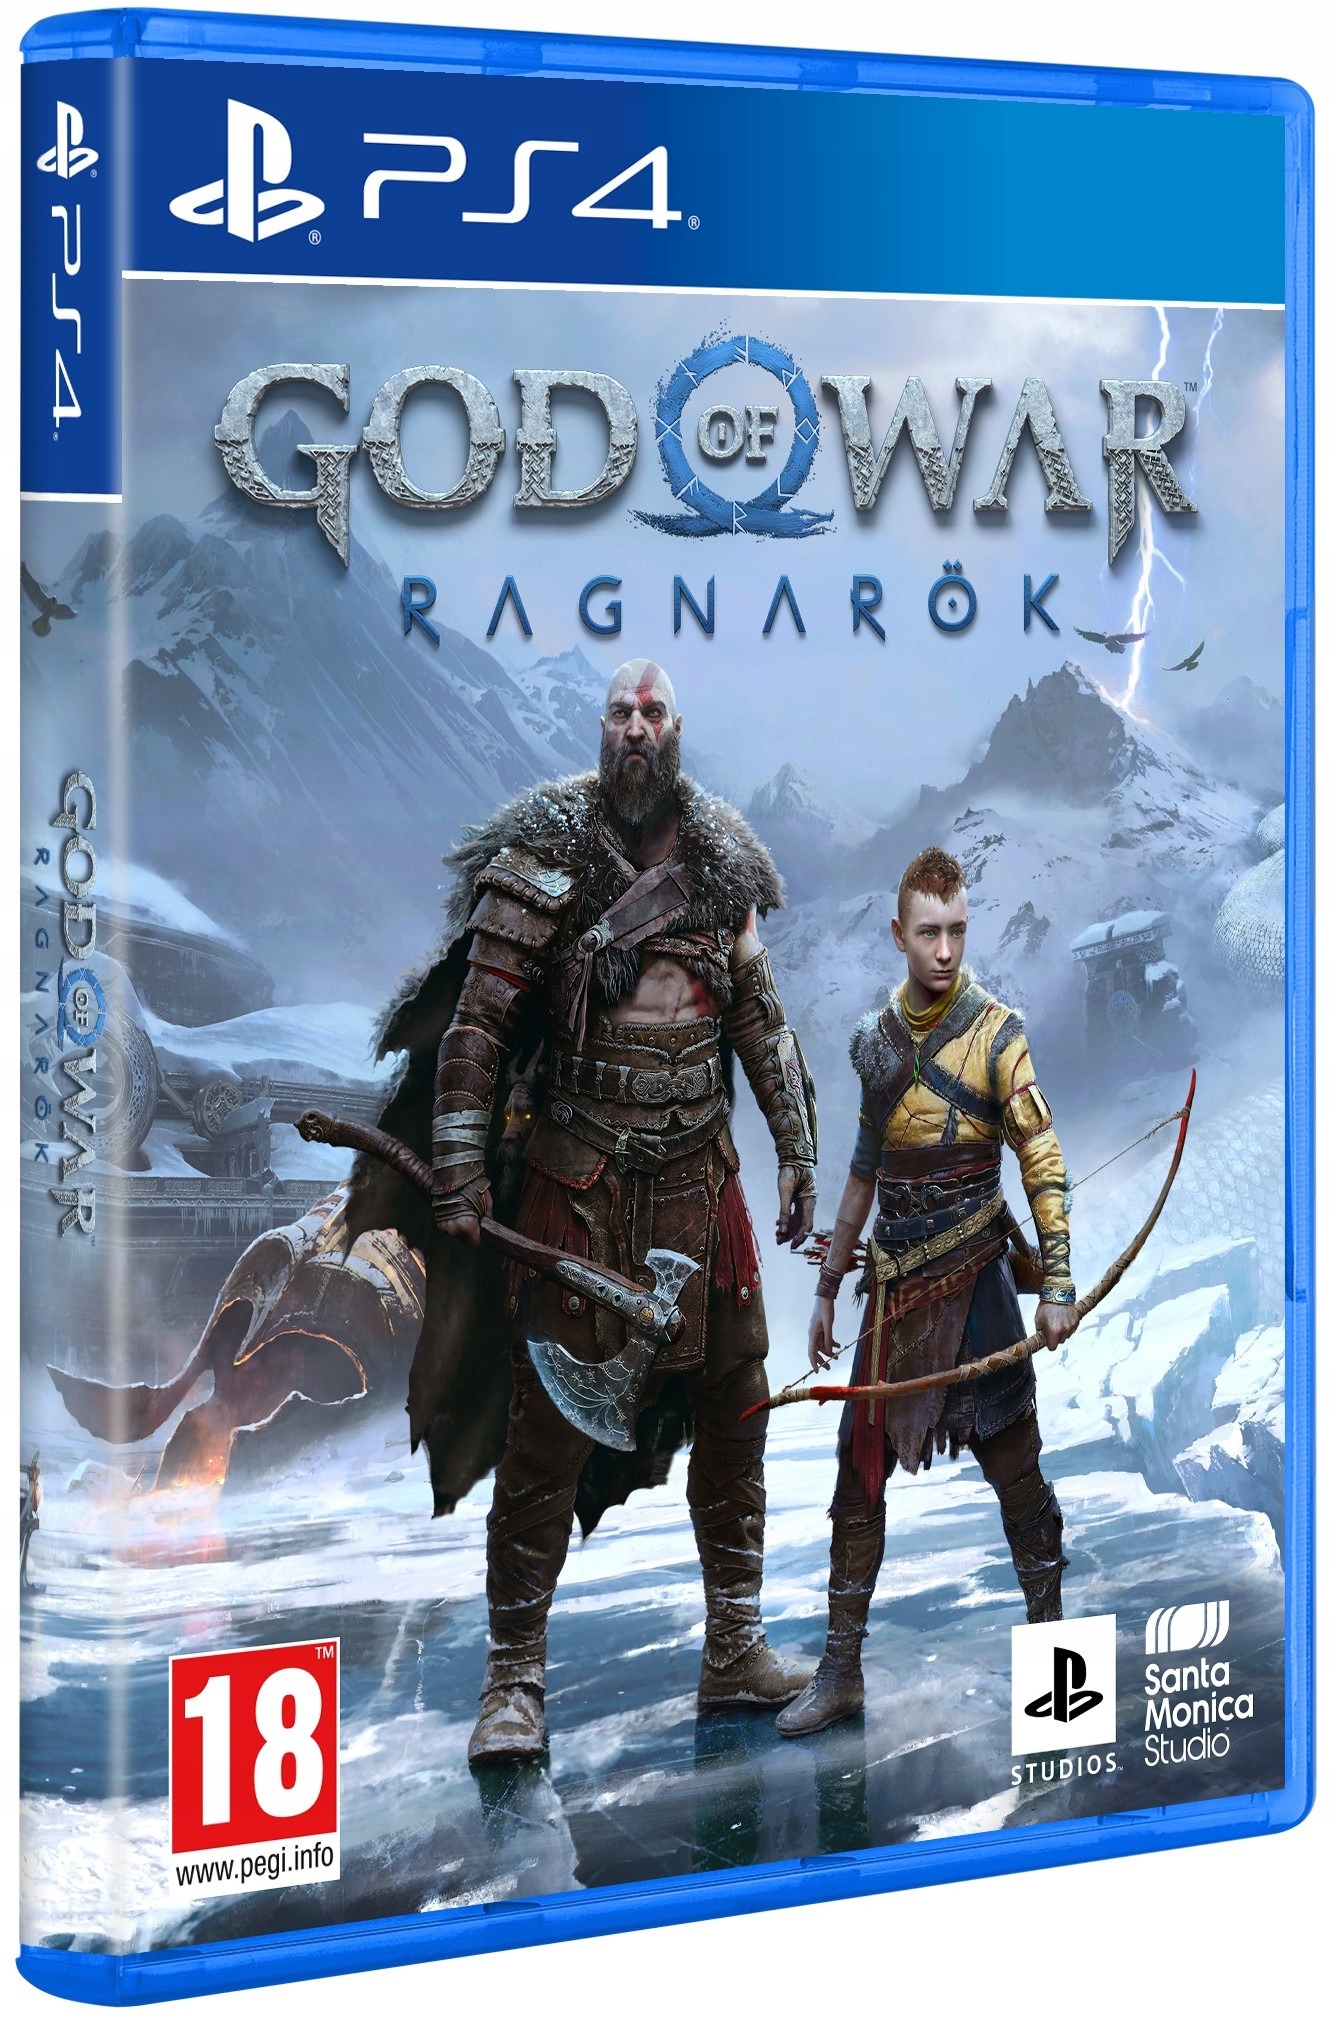 nedsænket bølge Lejlighedsvis God of War Ragnarök Gra PS4 PL - Stan: nowy 309,99 zł - Sklepy, Opinie,  Ceny w Allegro.pl